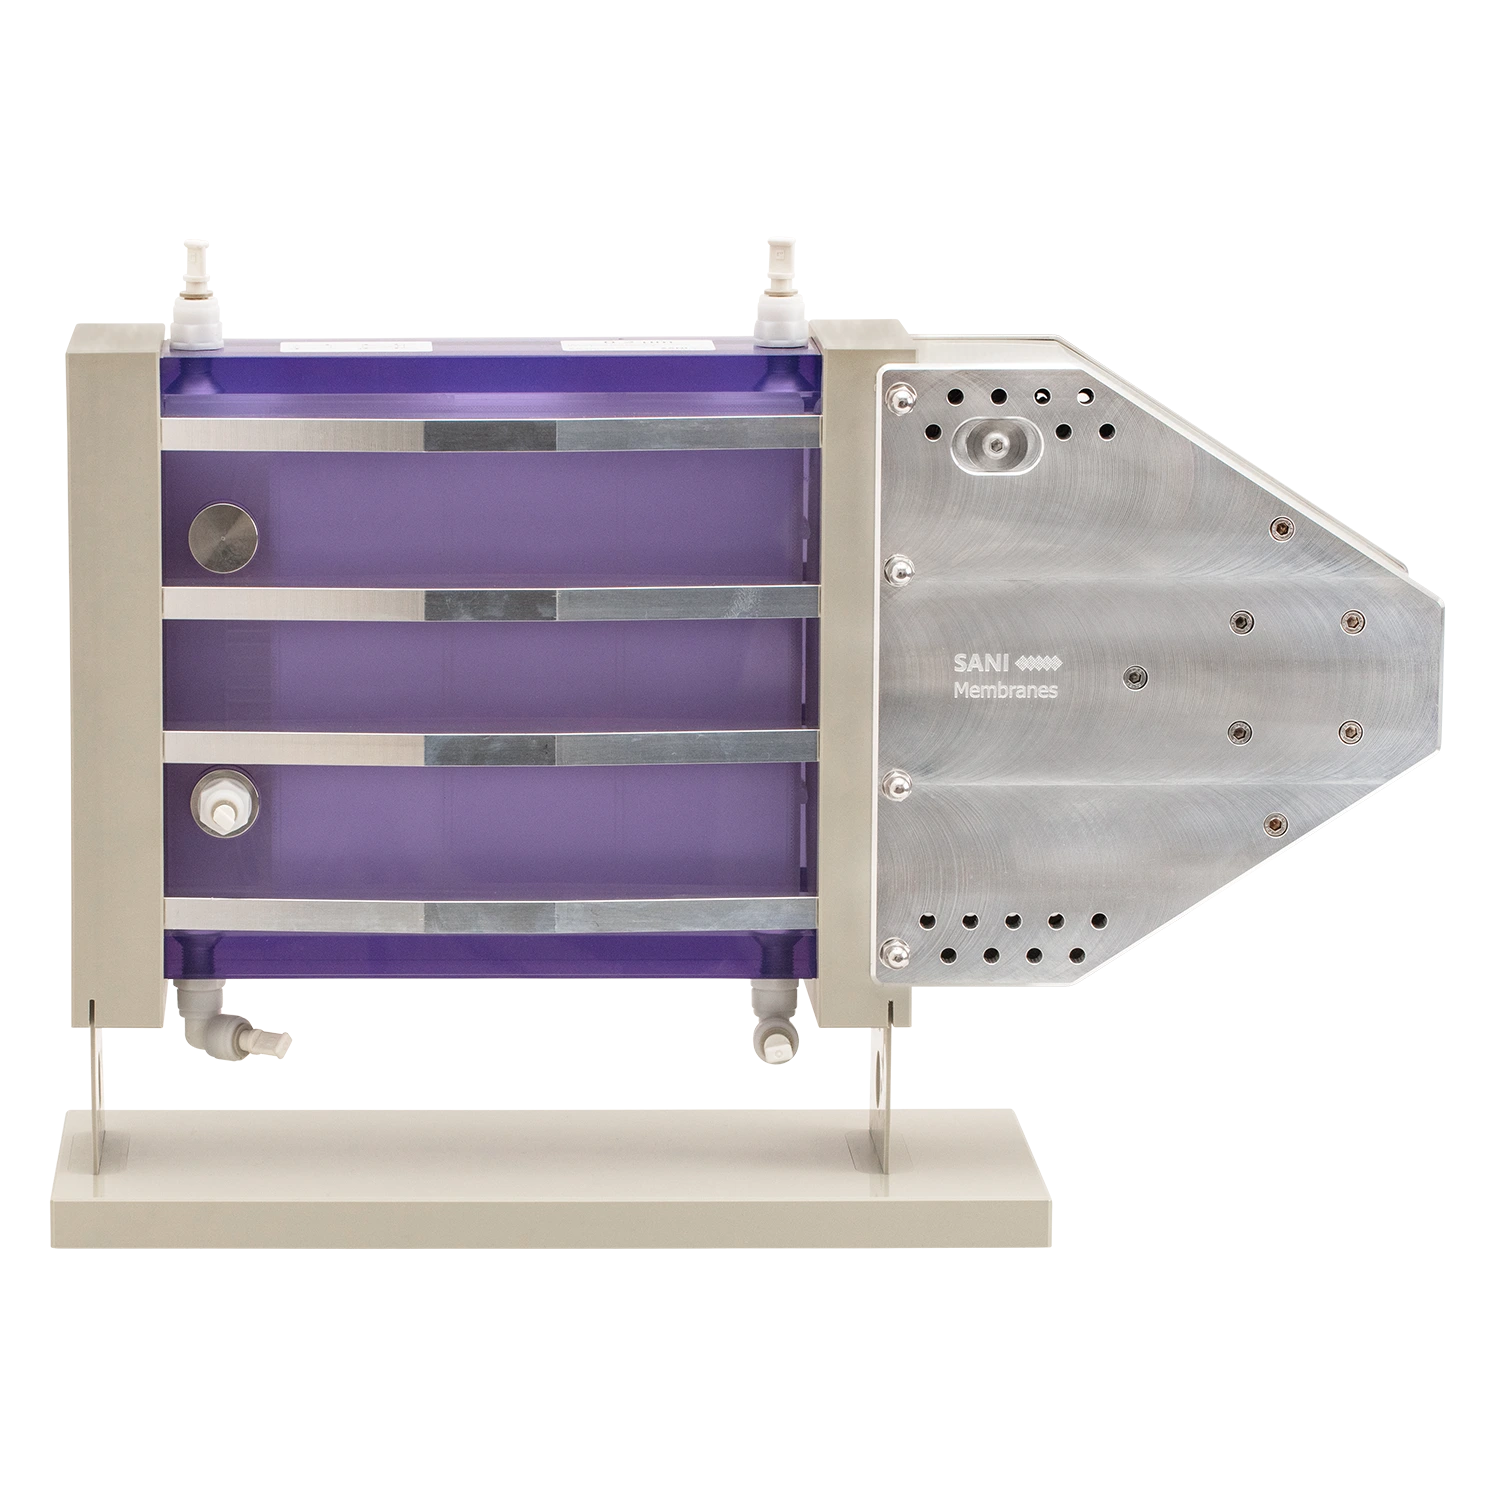 Vibro-Lab3500 membrane filtration unit